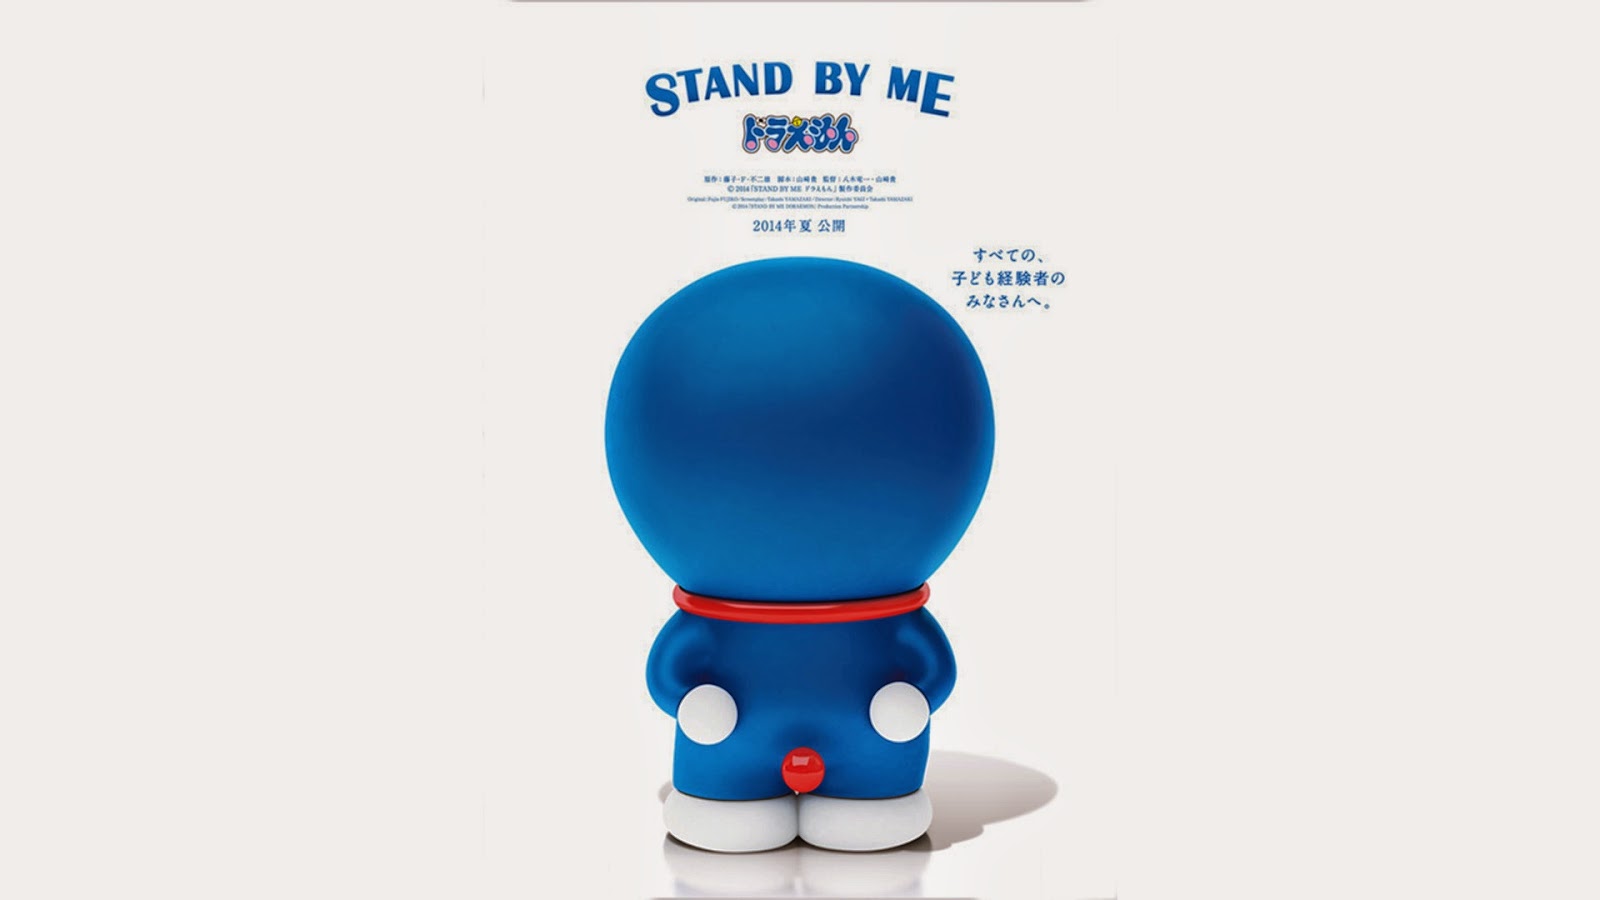 Jual Beli Bantal Doraemon Bukalapak Royal Gambar Mudah Stand 2014